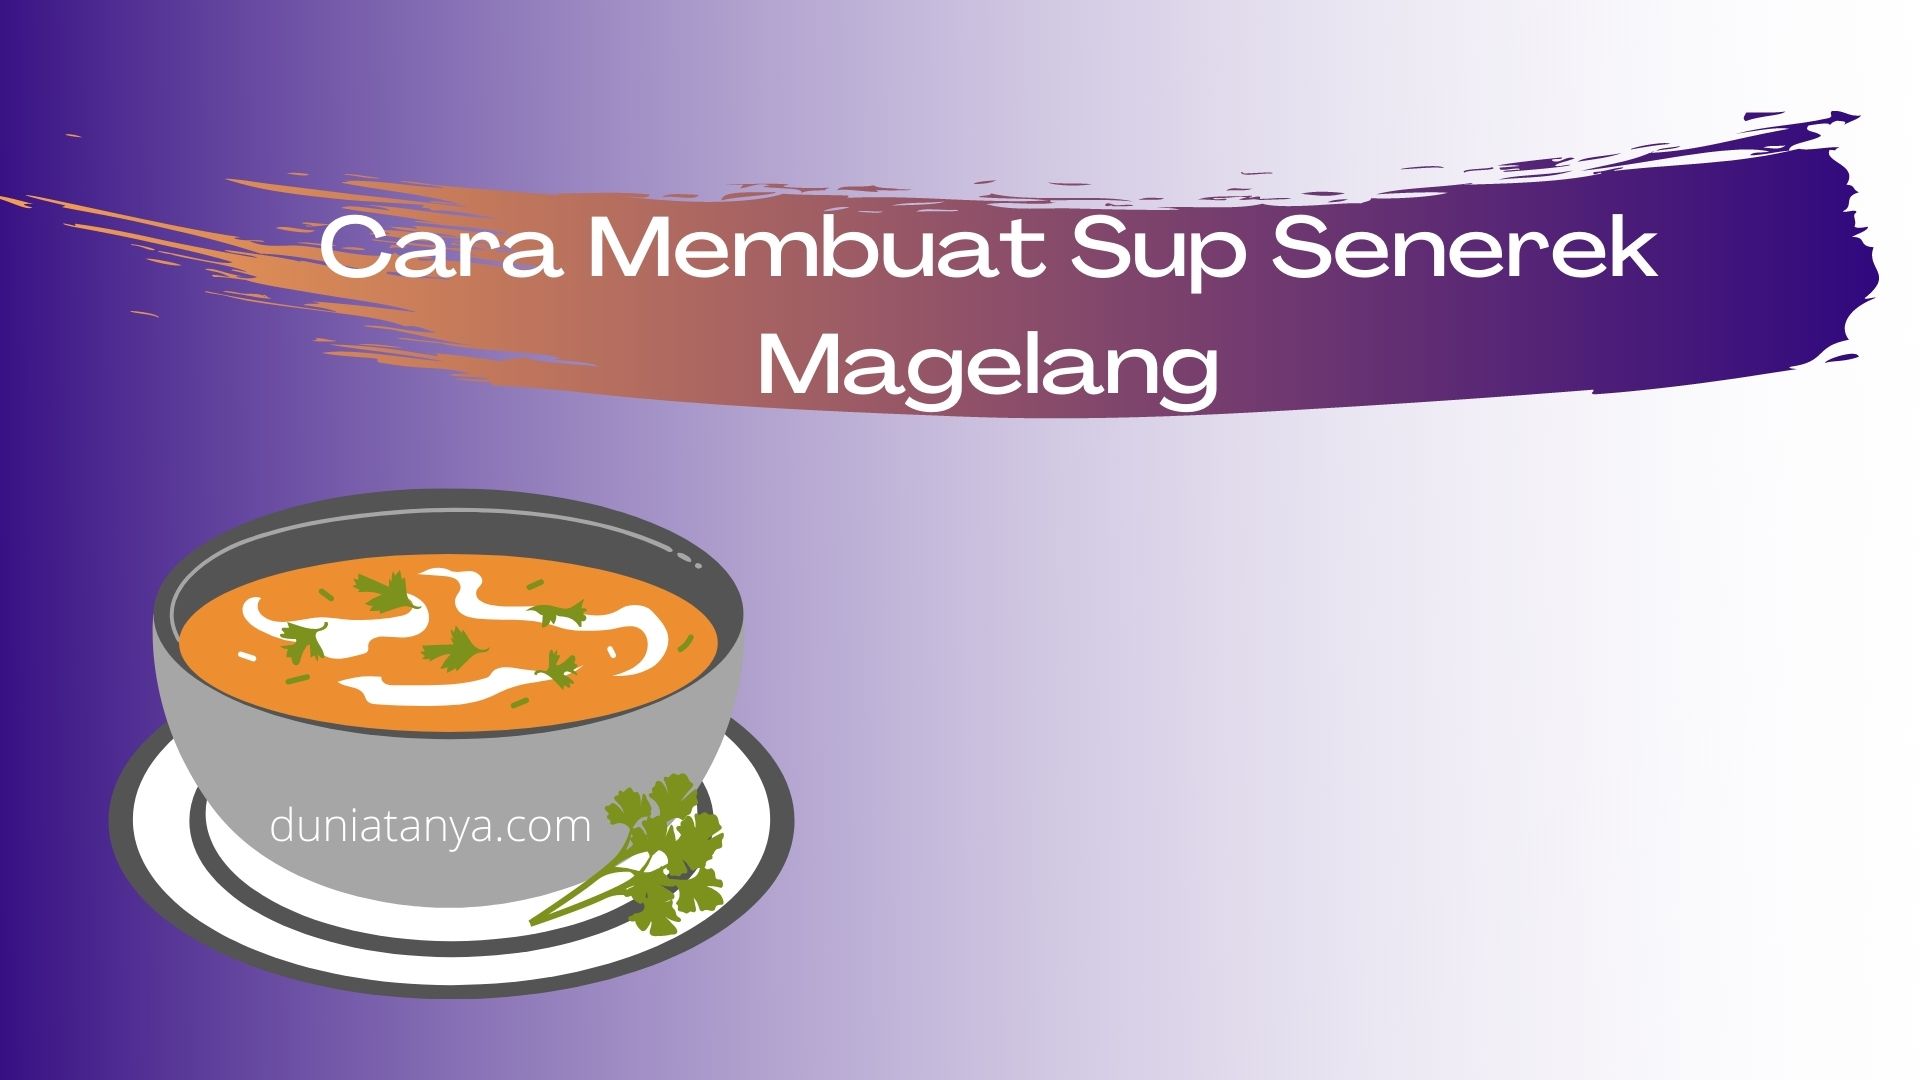 You are currently viewing Cara Membuat Sup Senerek Magelang